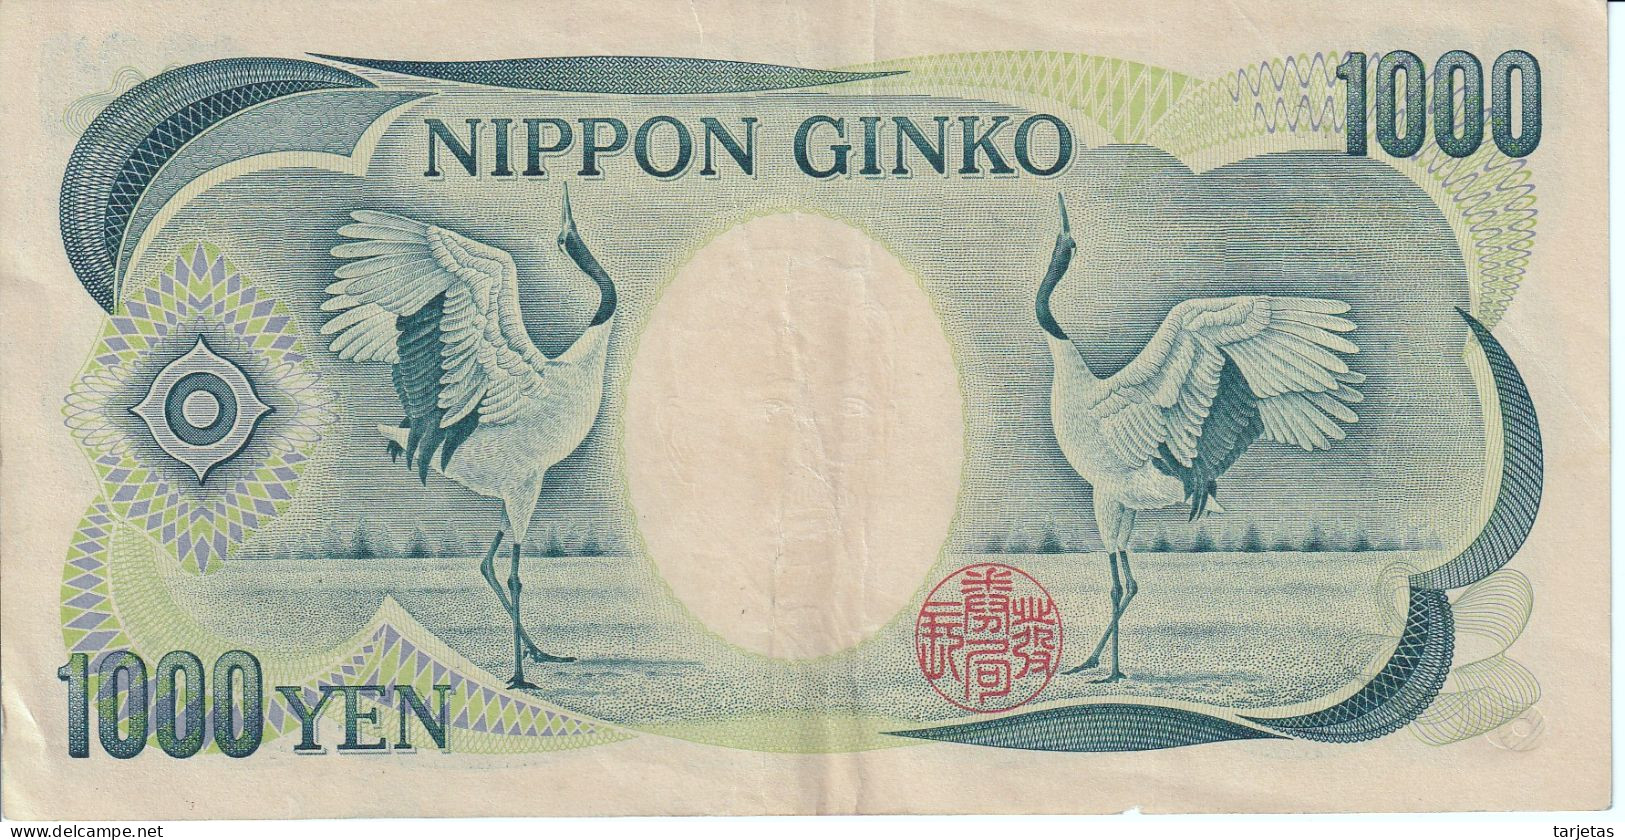 BILLETE DE JAPON DE 1000 YEN DEL AÑO 1984 EN CALIDAD EBC (XF)  (BANKNOTE) - Japan